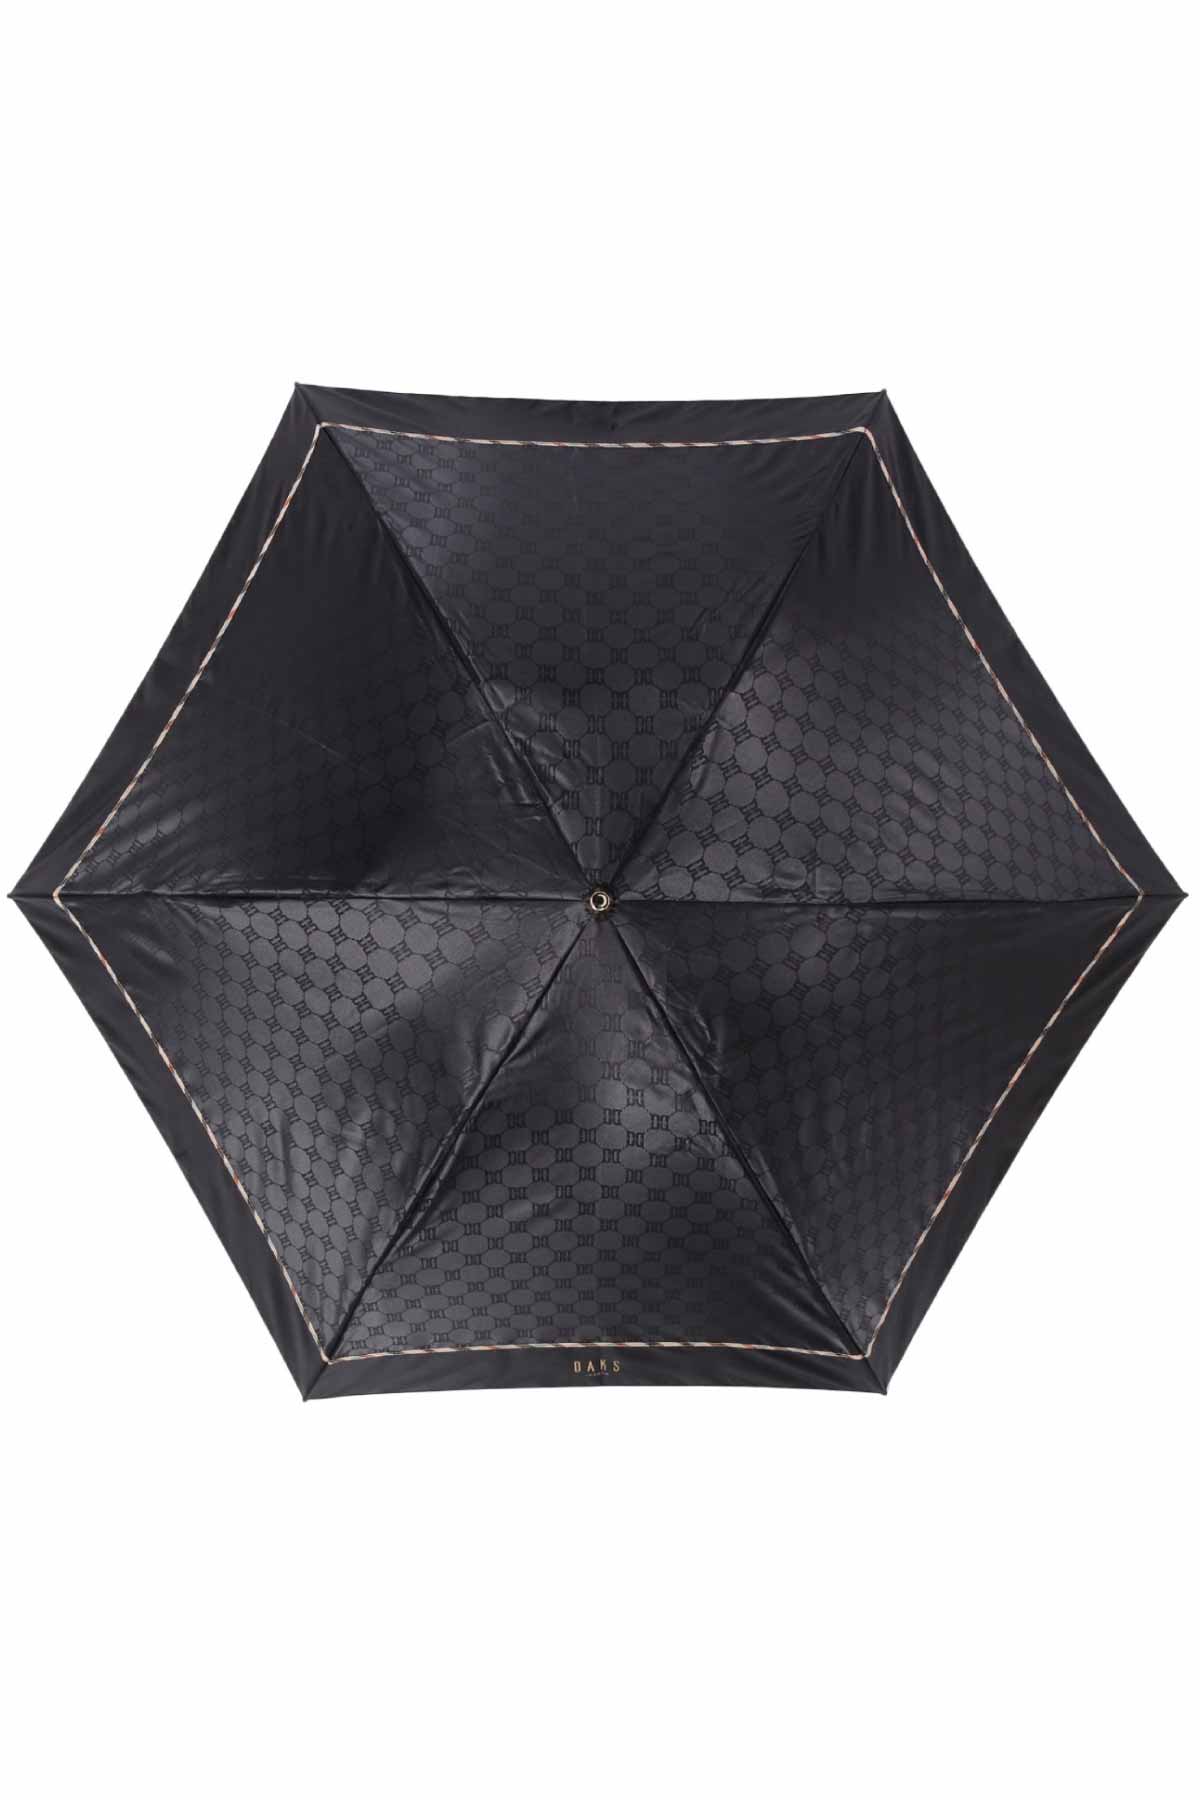 【雨傘】折りたたみ傘クイックアーチジャカード 詳細画像 8